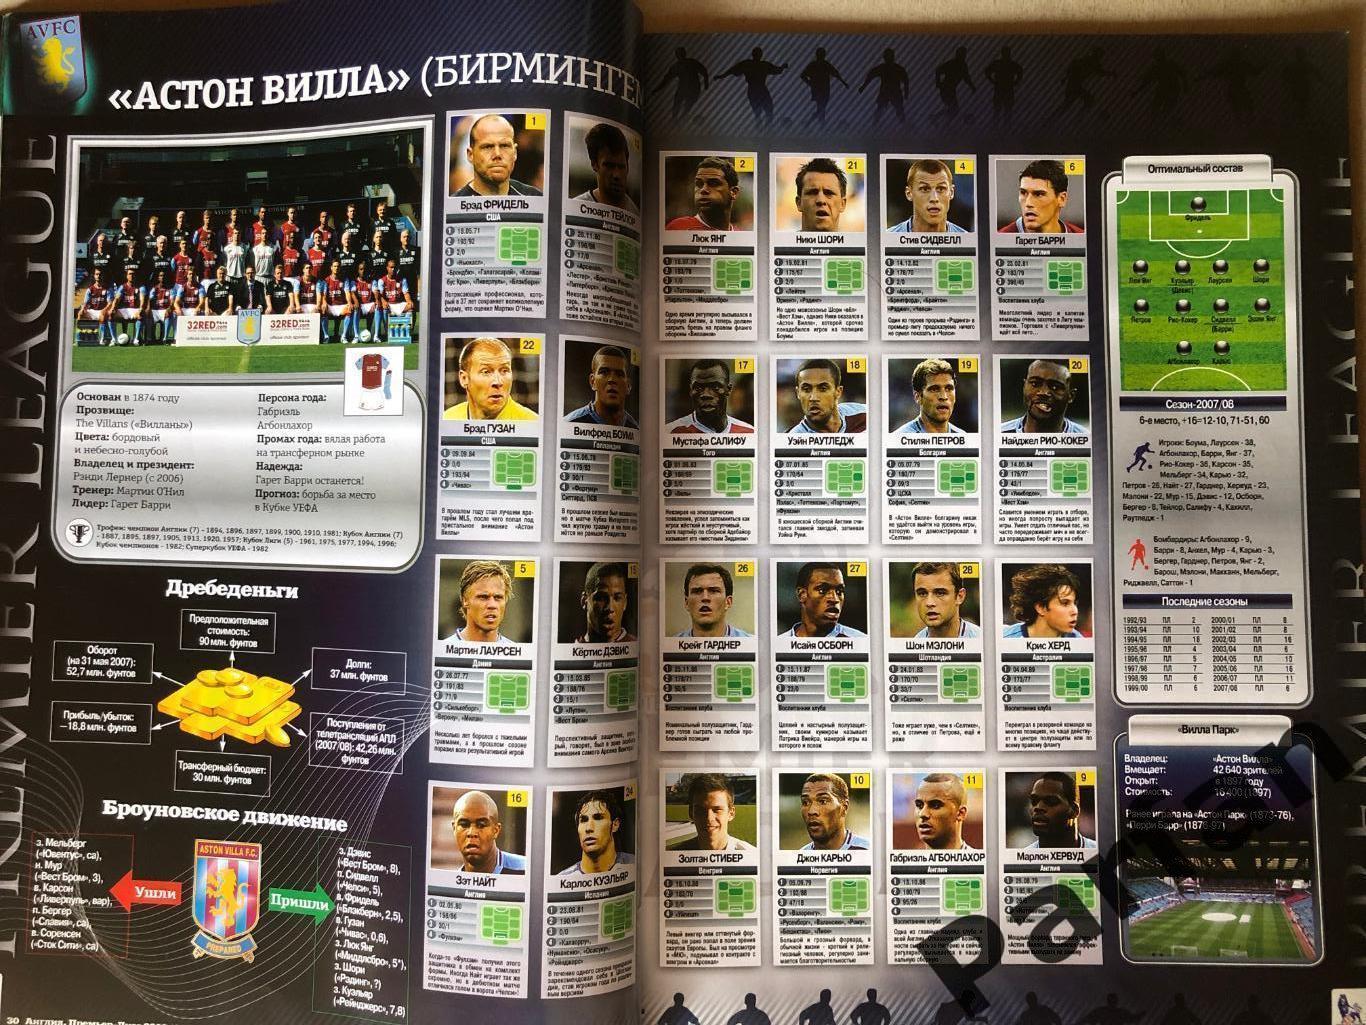 Журнал Футбол Україна Прем'єр Ліга Англія 2008/09 Спецвипуск 5